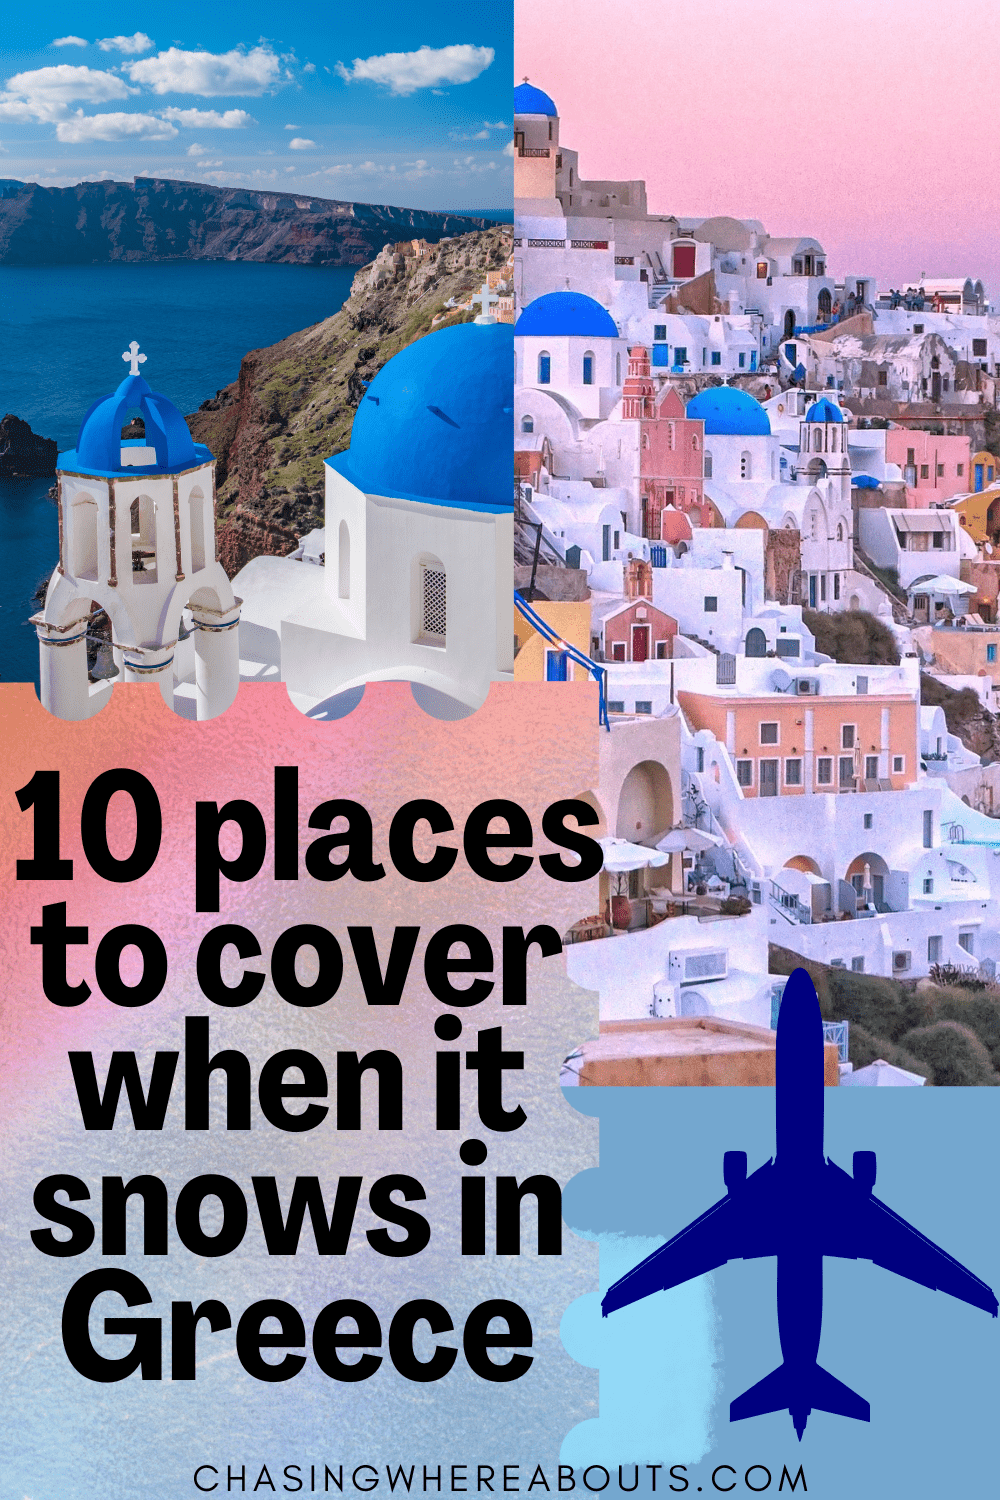 Does it Snow in Greece